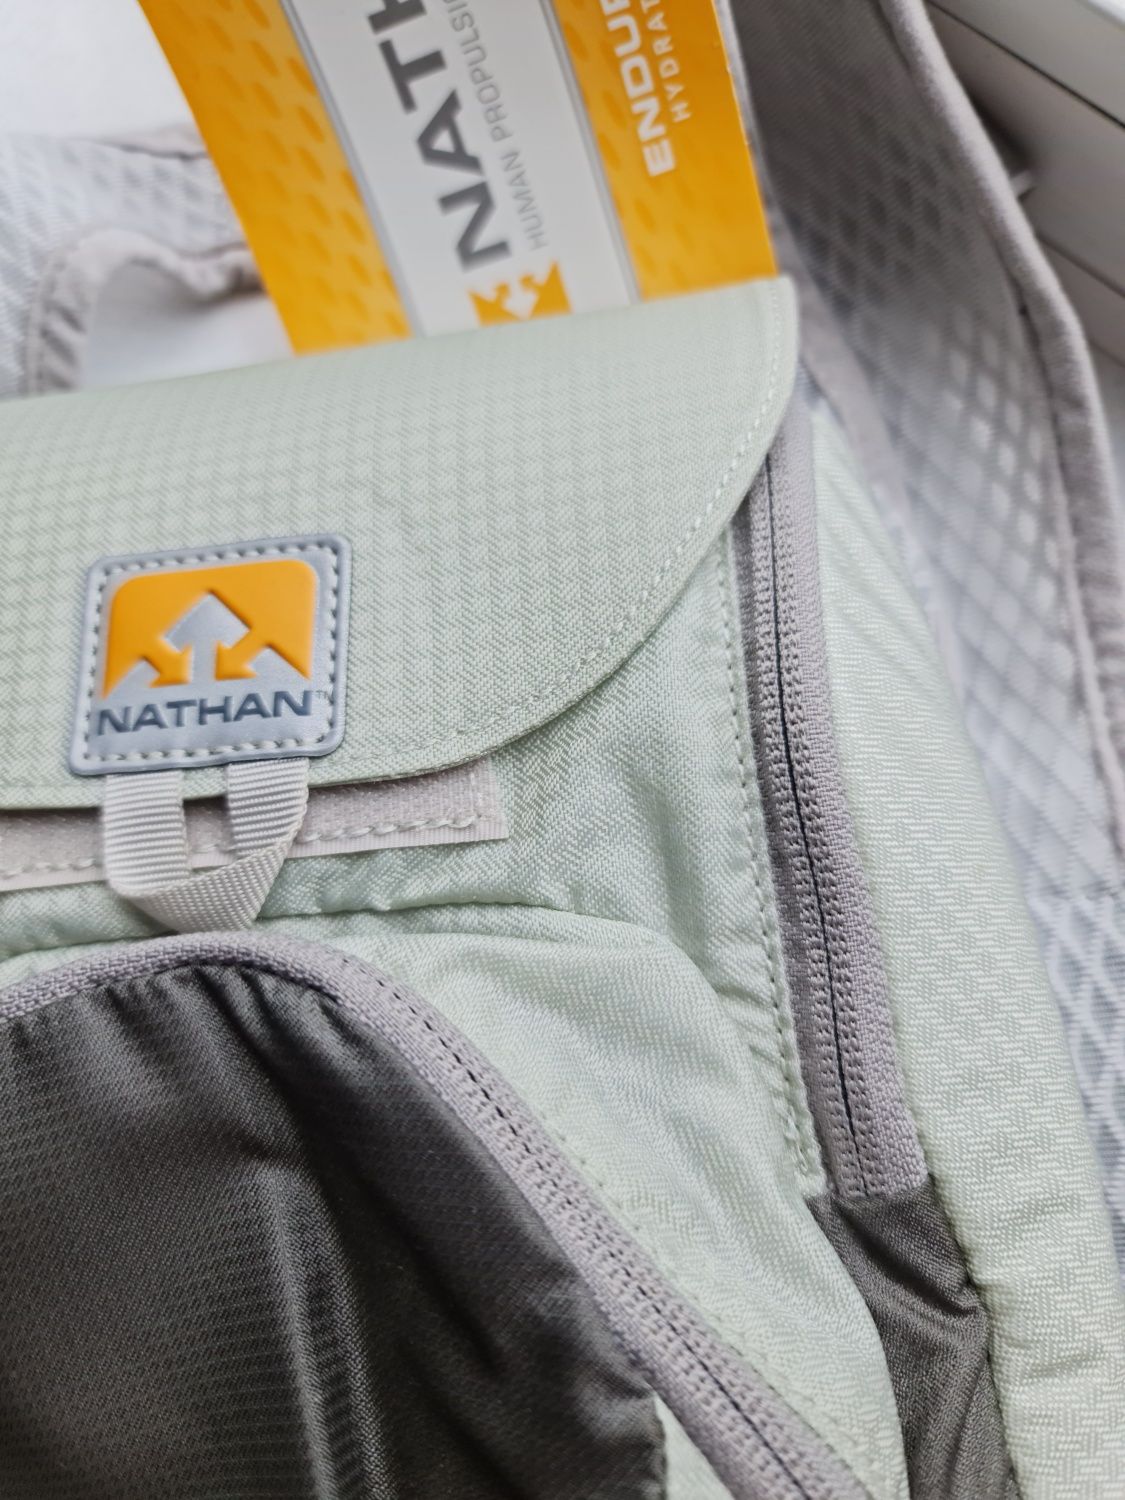 НОВЫЙ рюкзак с резервуаром для воды Nathan Intensity Race Vest